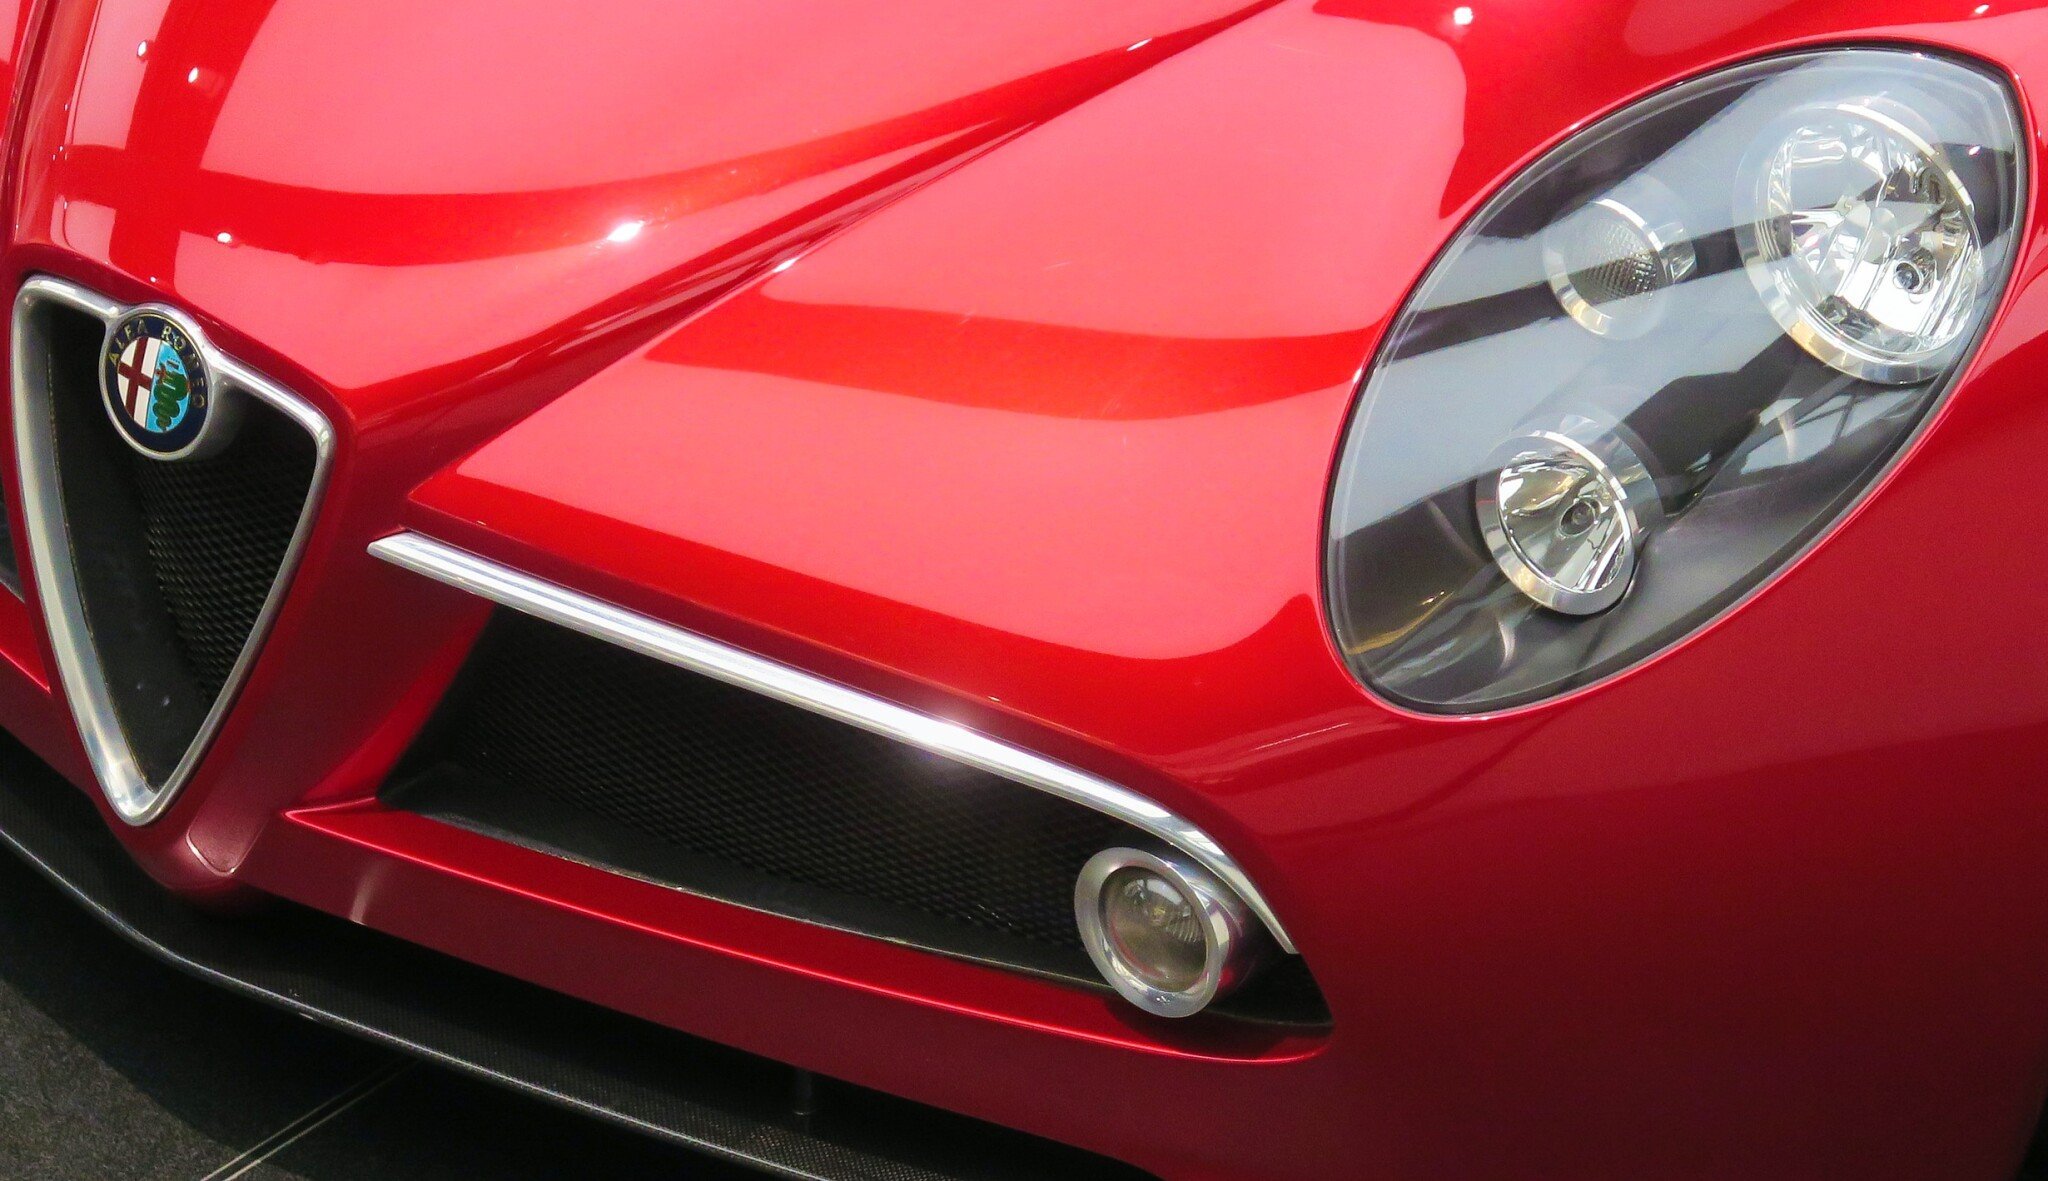 První stoprocentní elektromobil Alfa Romeo. Po modelu Milano se plánuje řada elektroaut